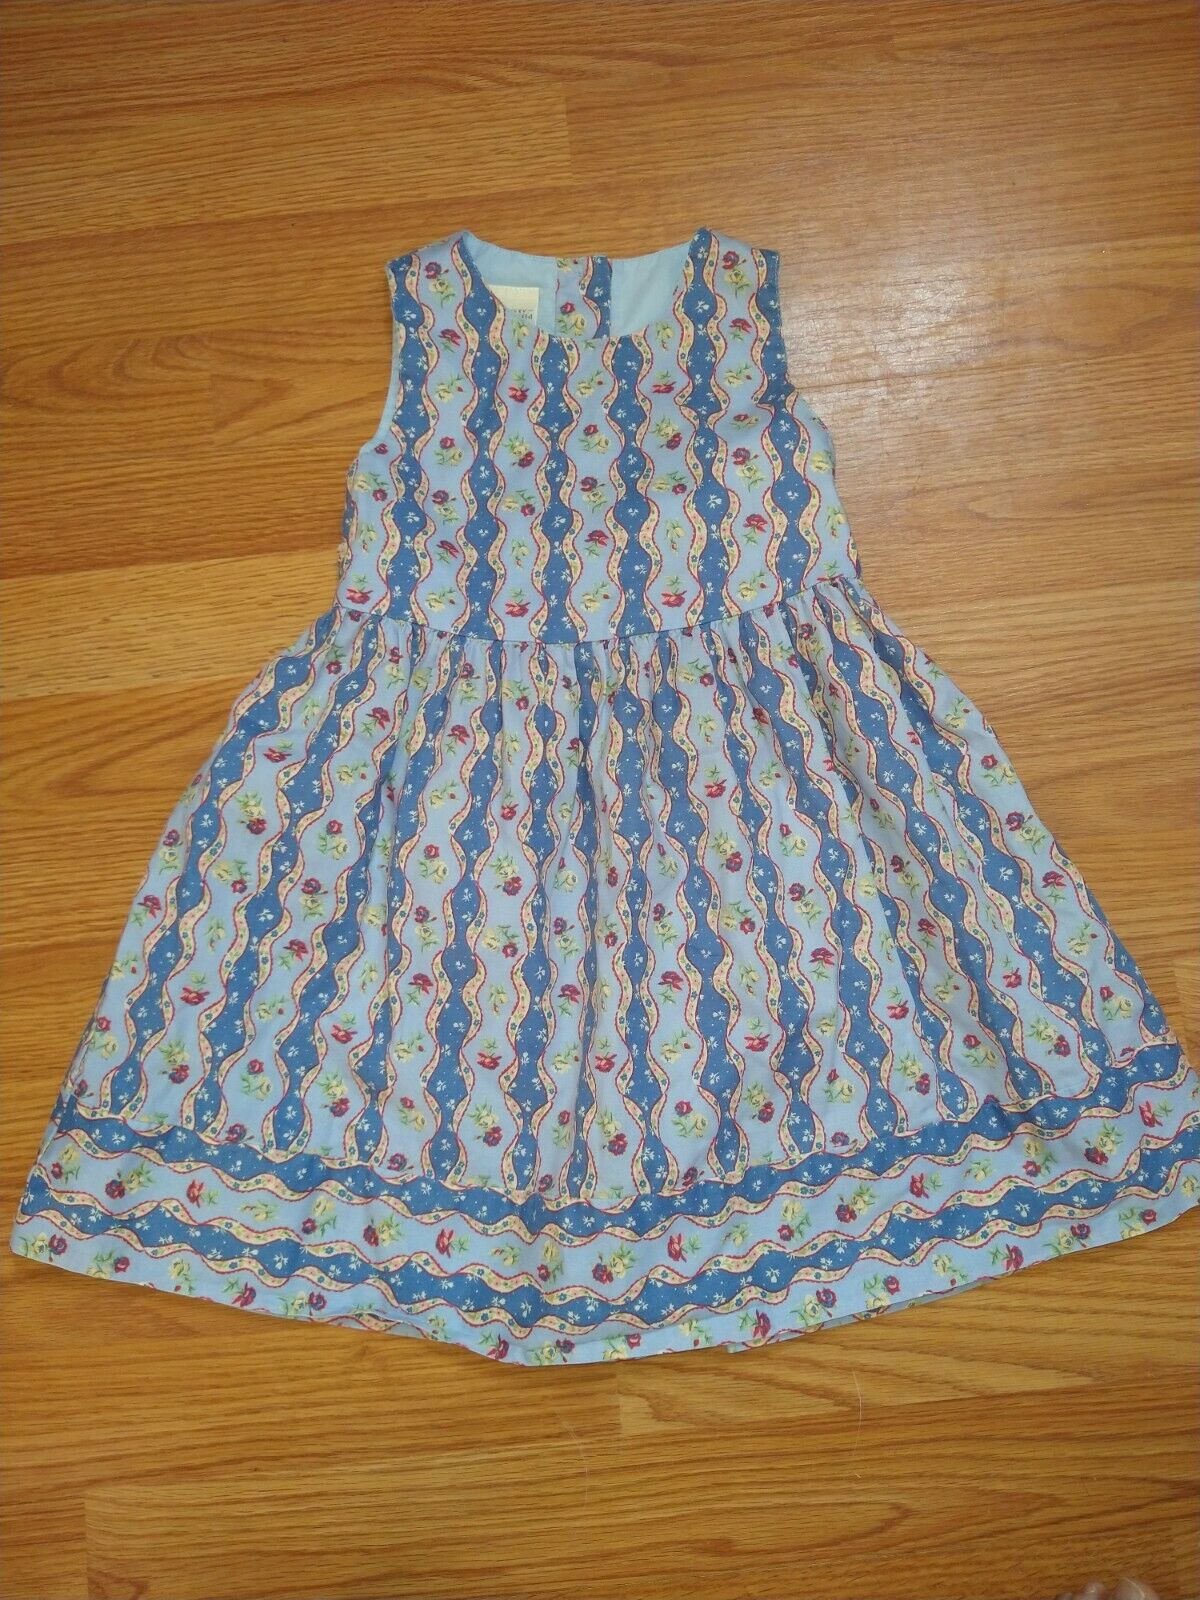 Vtg Laura Ashley Mother & Child Blue Floral Dress Sundress Size 2